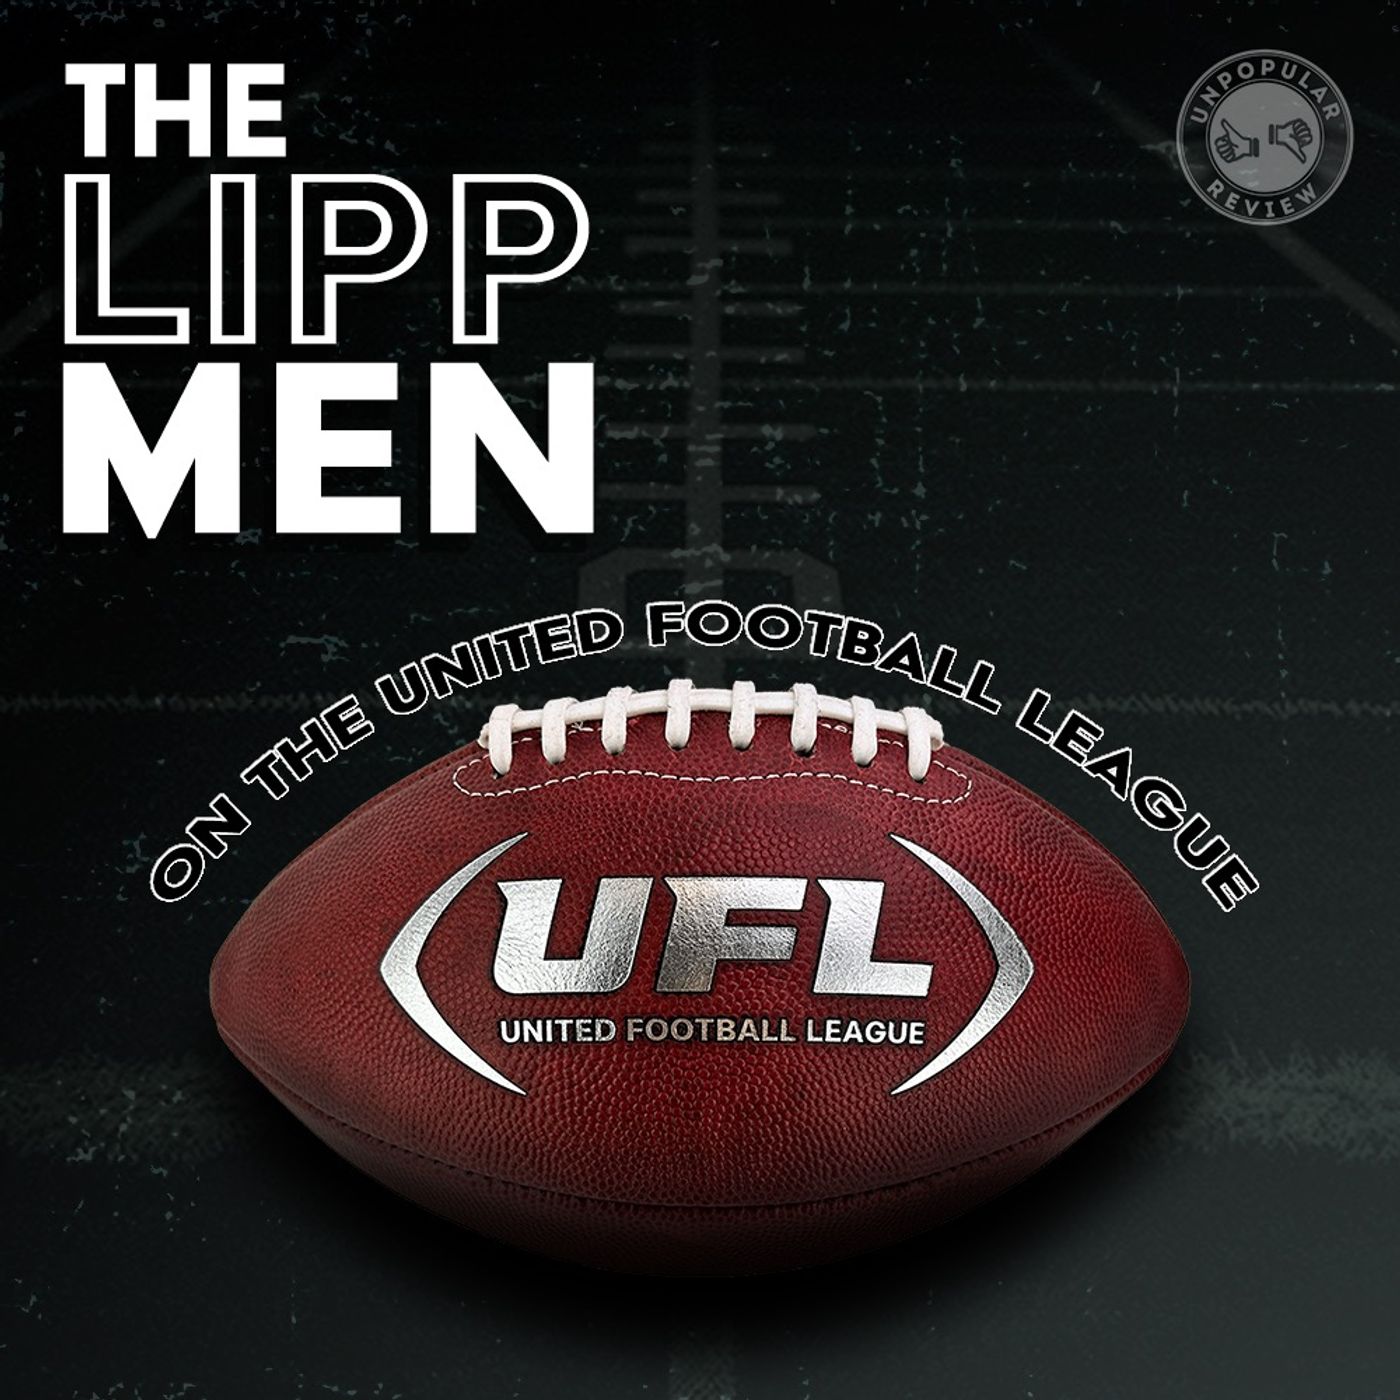 E. 2 Lipp Men on the UFL XFL Division